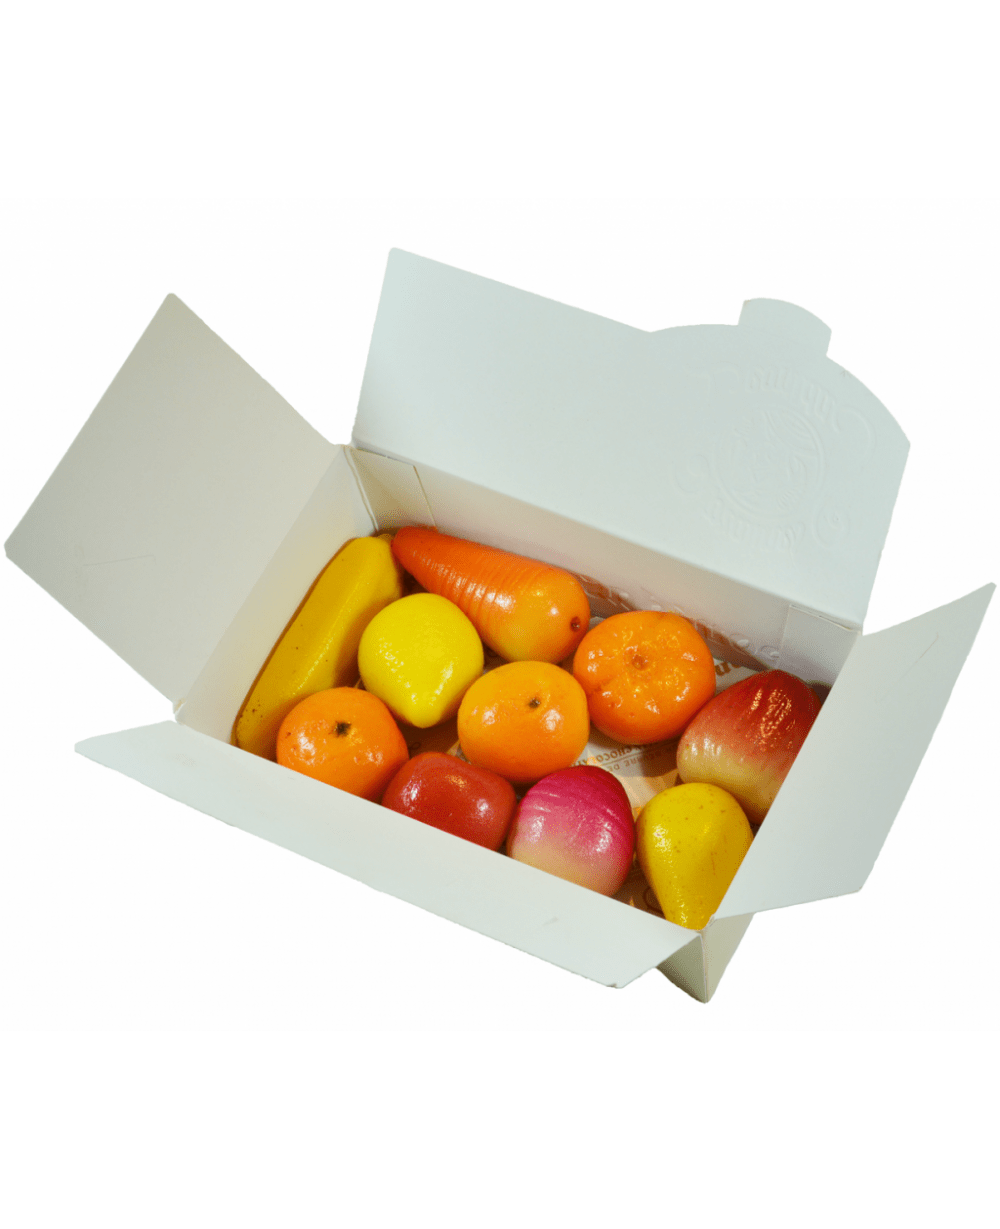 MARZIPAN Fruits Ballotin Box by weight - leonidasbrighton.co.uk - Leonidas Brighton